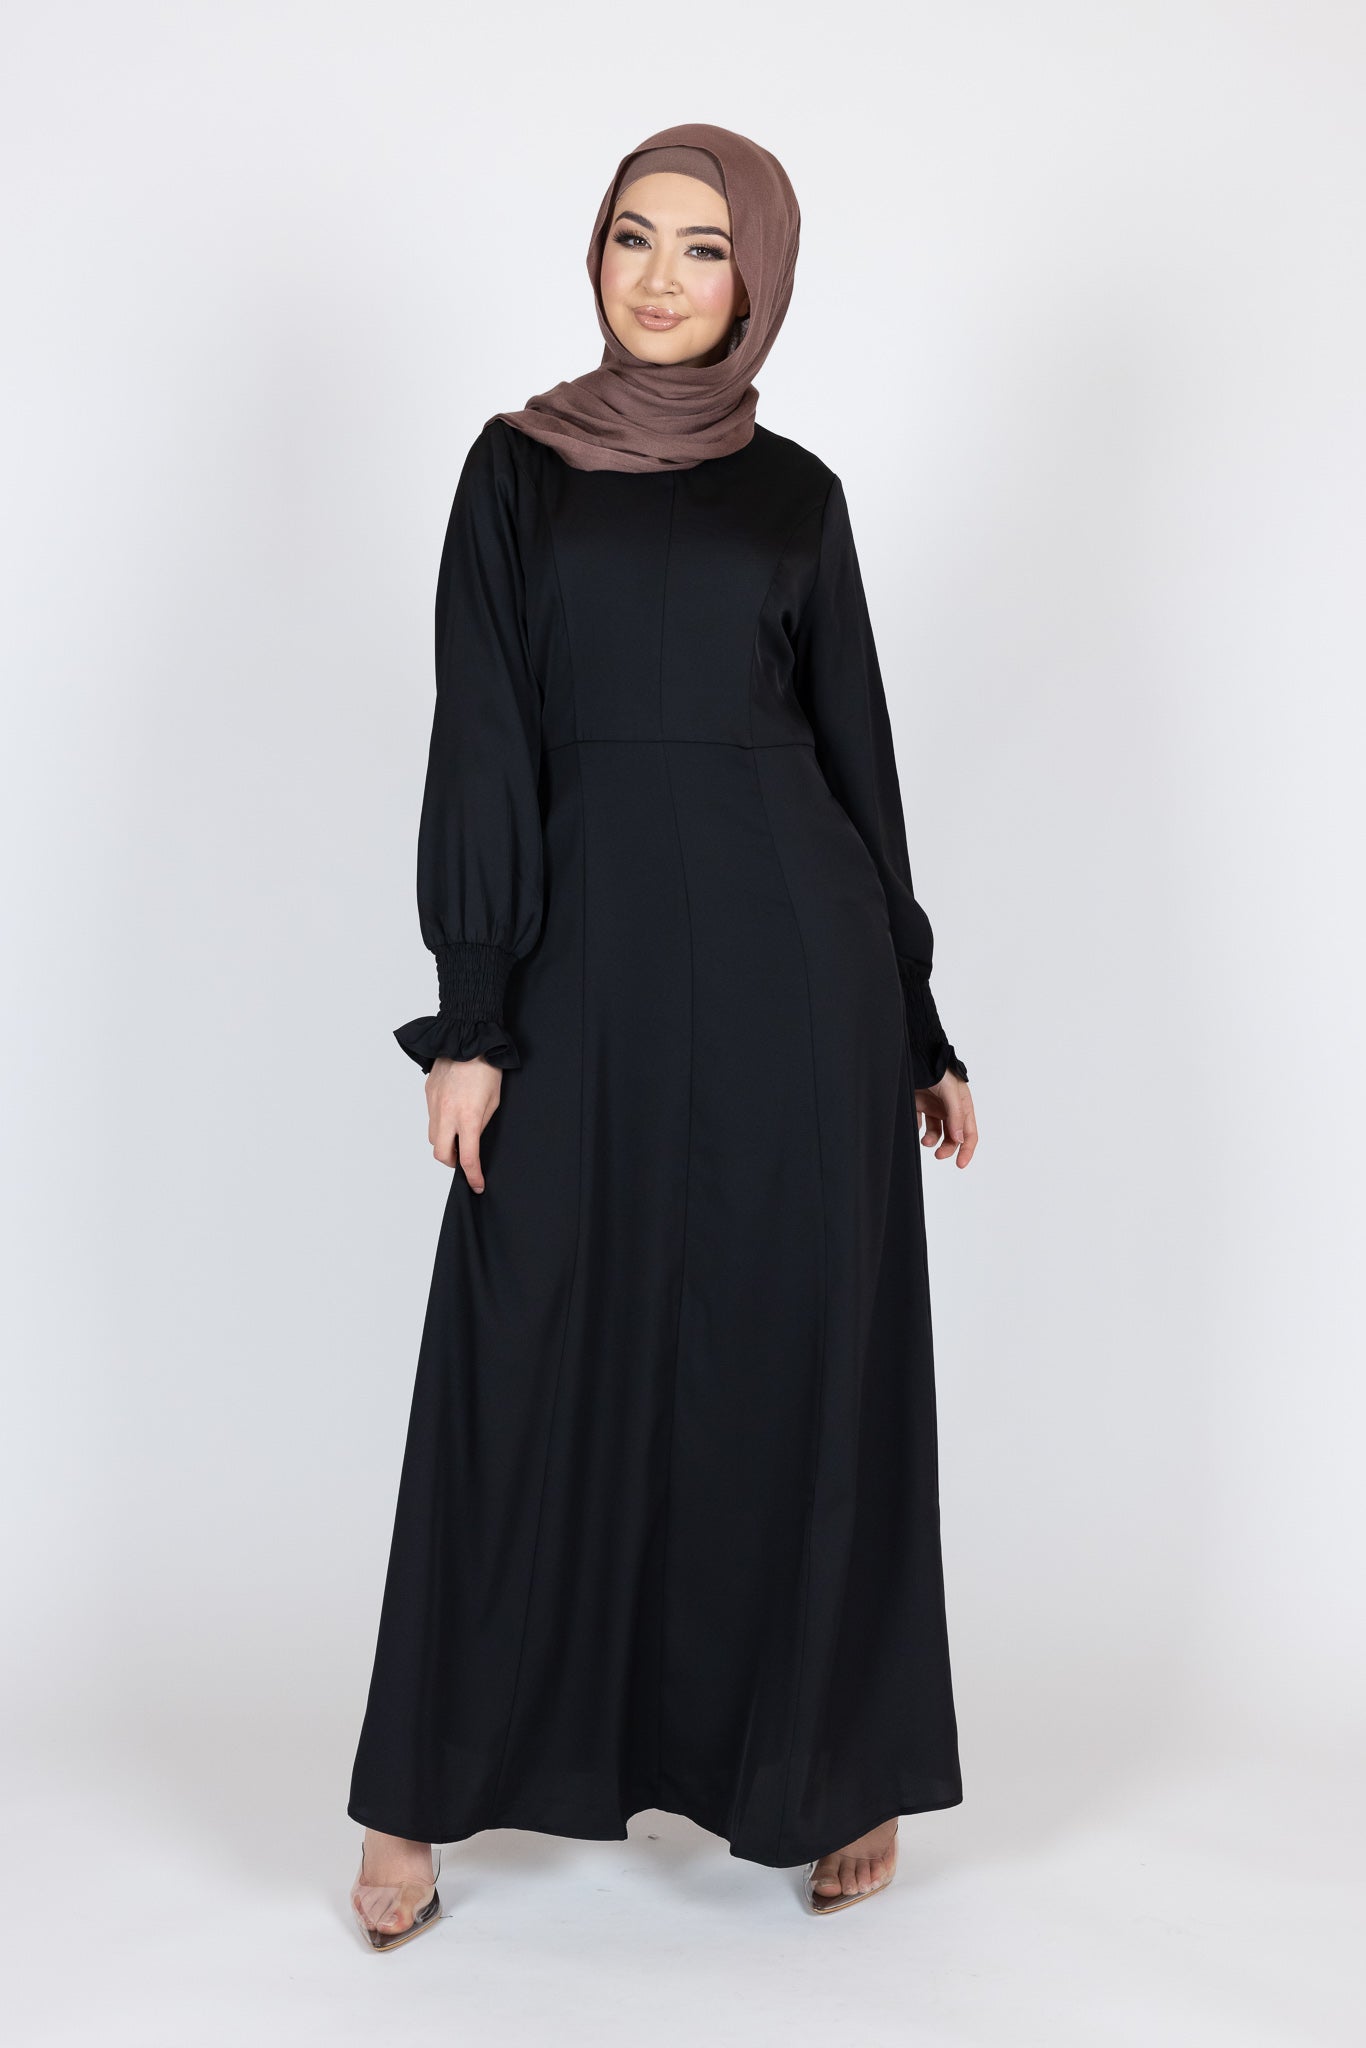 M8018Black-dress-abaya